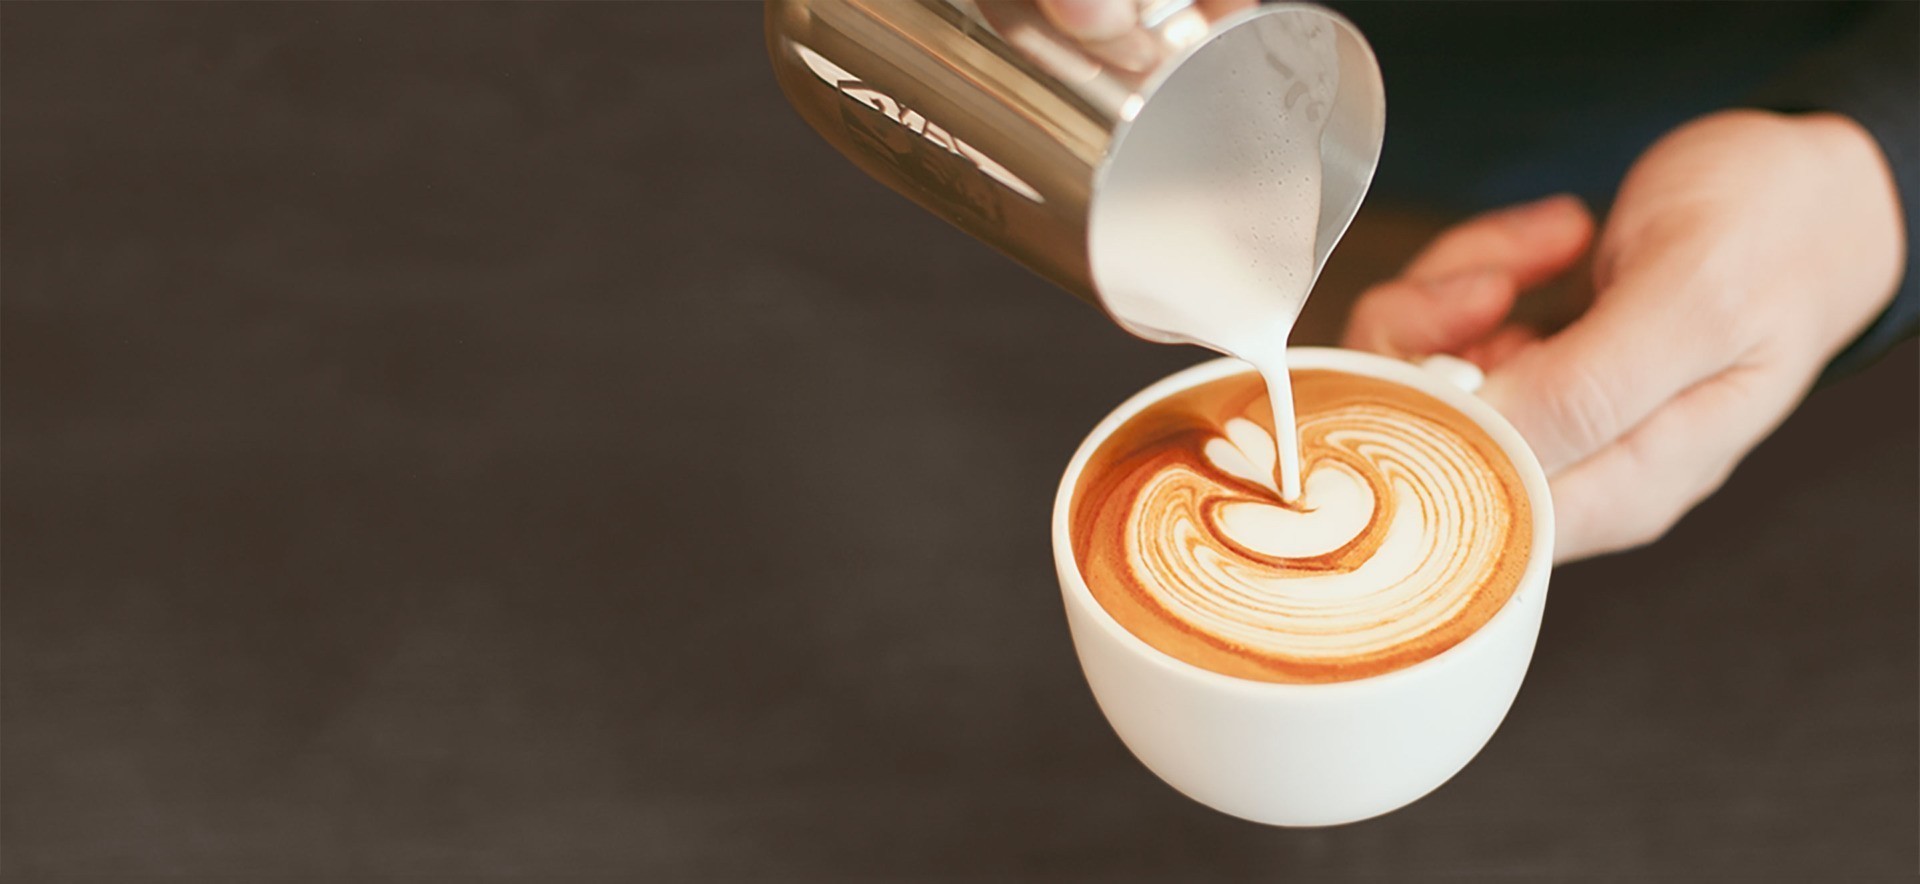 Pro Tips for Latte Art - La Marzocco Home